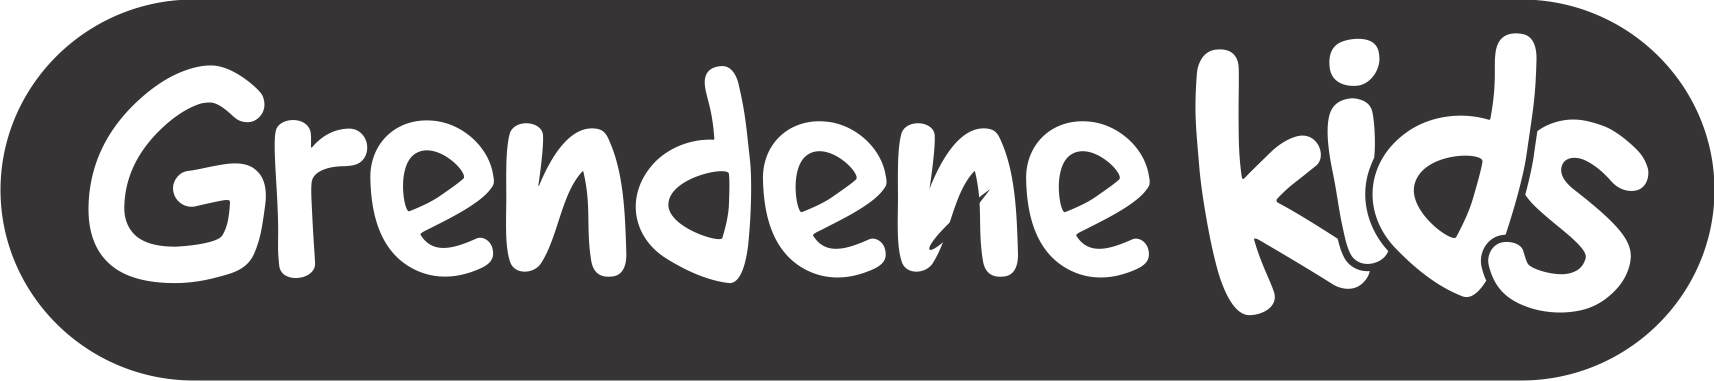 Logo Grendene Kids